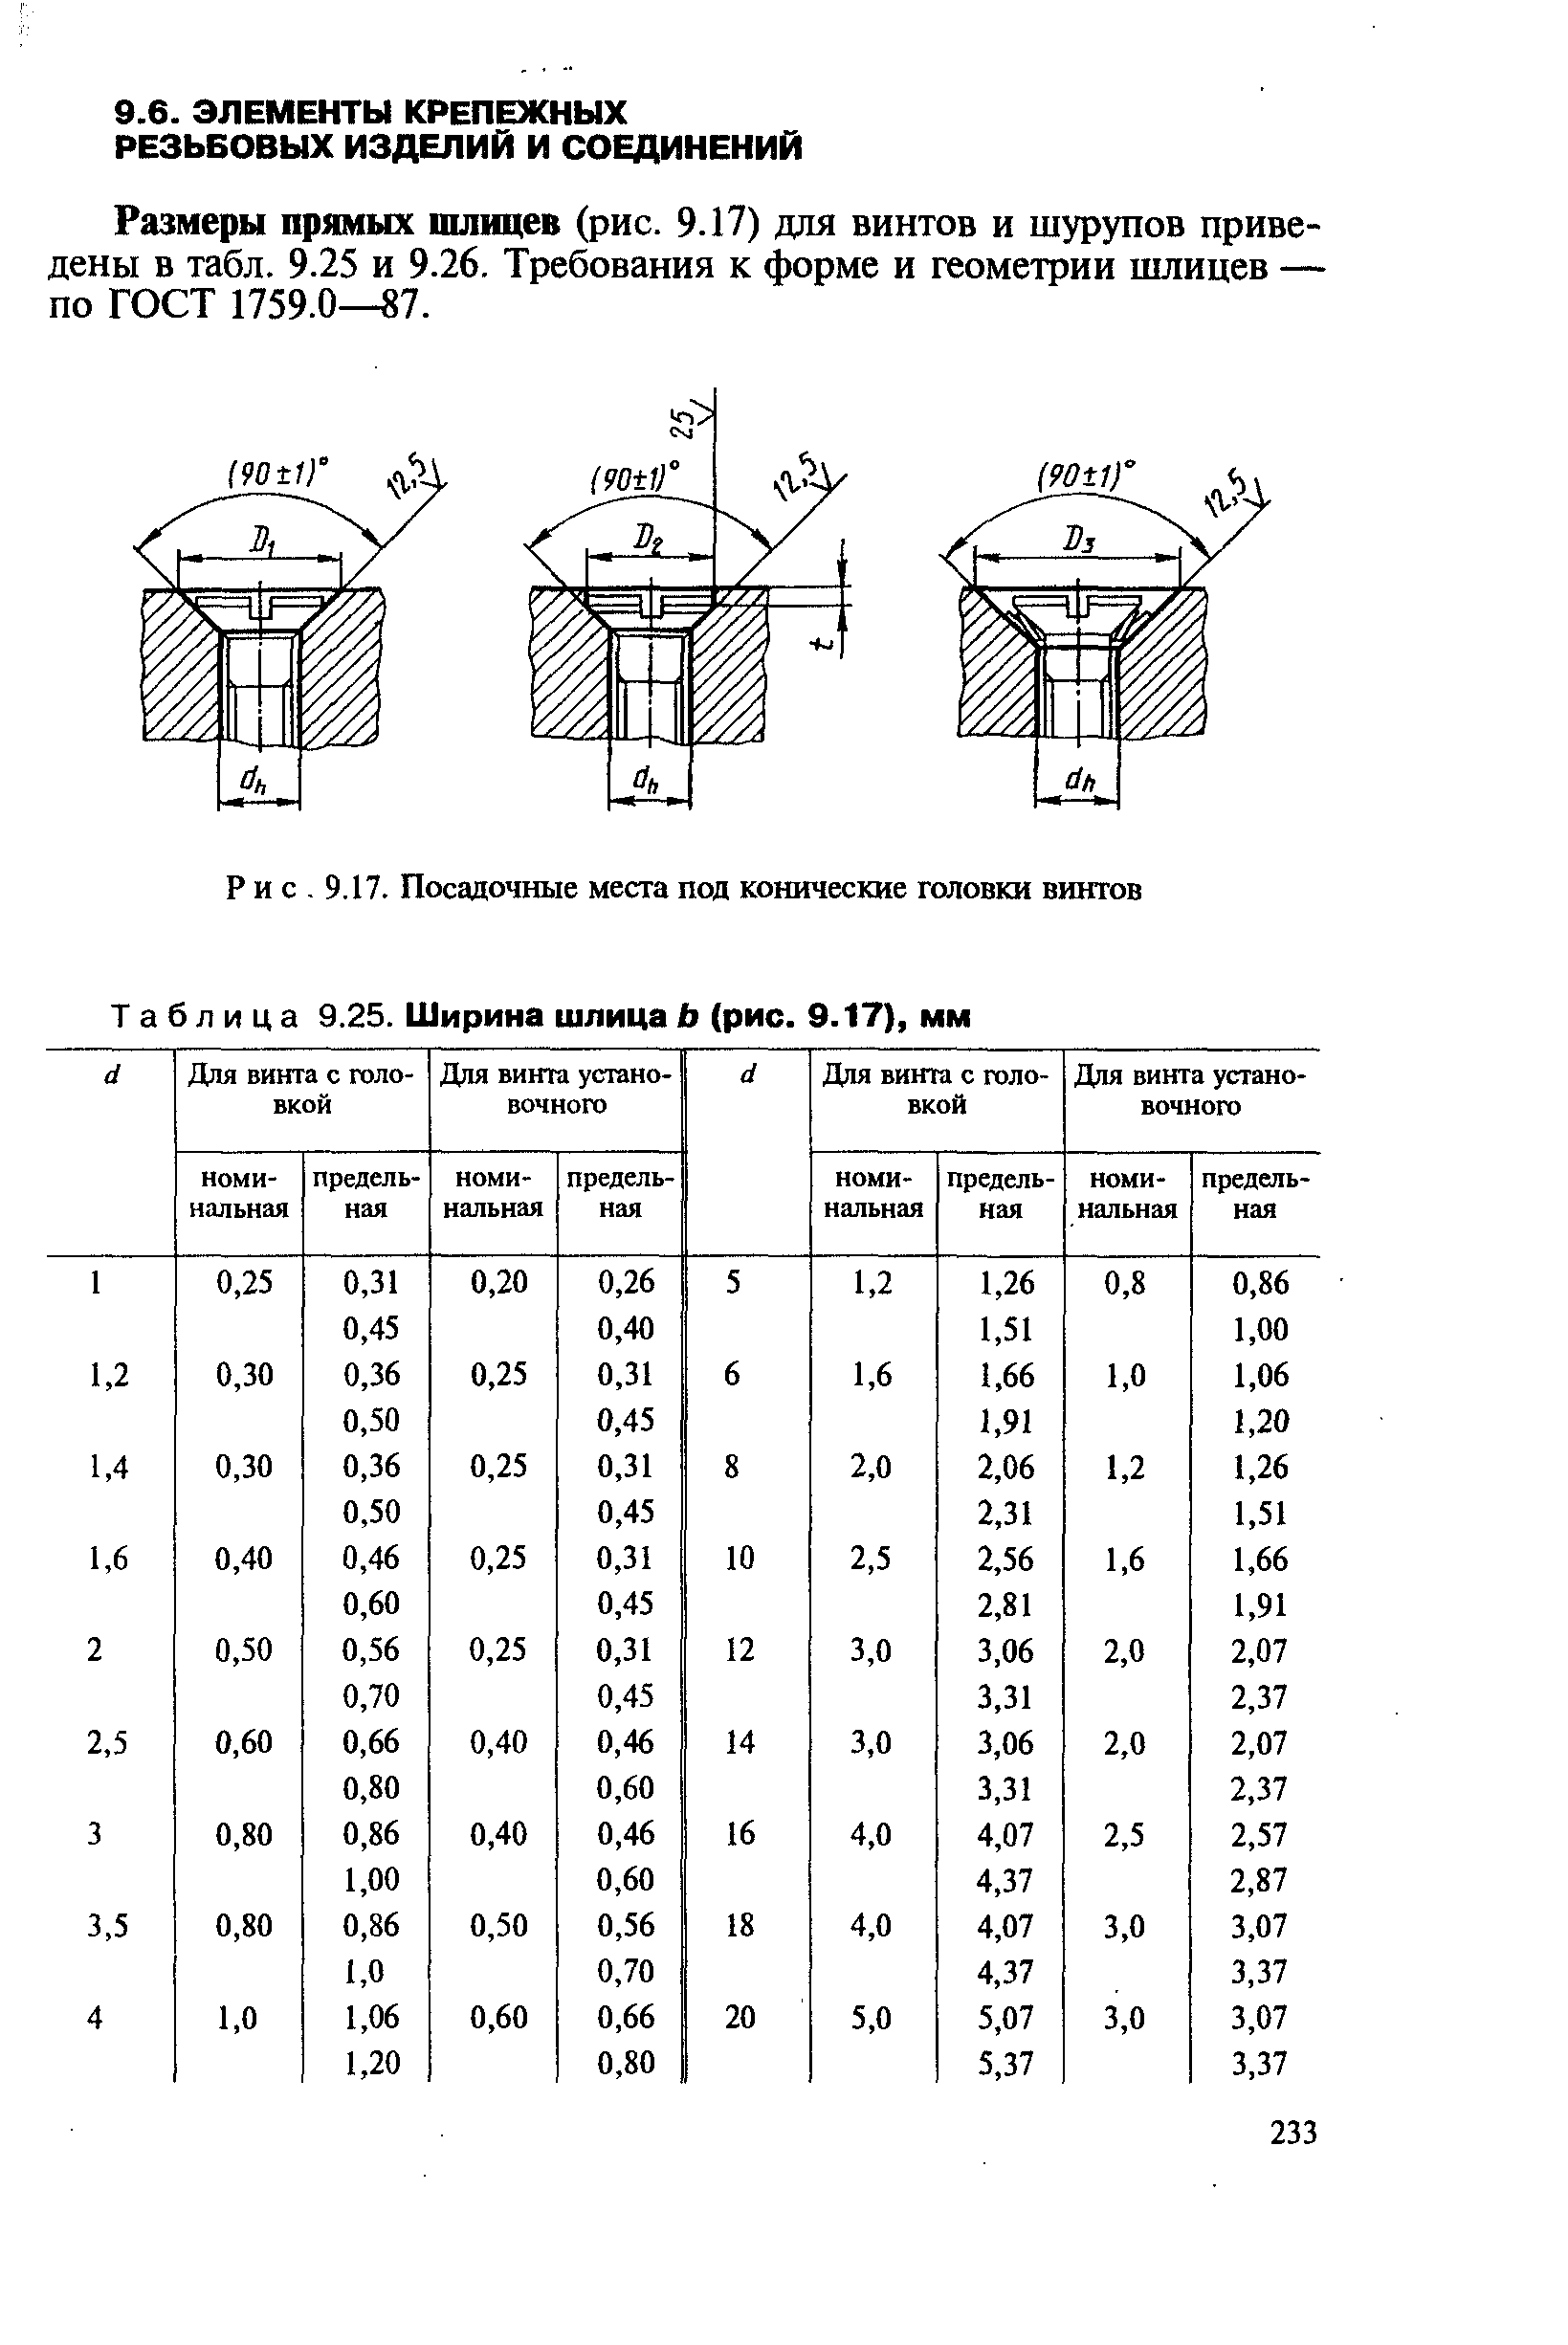 Размеры прямых шлицев (рис. 9.17) для винтов и шурупов приведены в табл. 9.25 и 9.26. Требования к форме и геометрии шлицев — по ГОСТ 1759.0—87.
